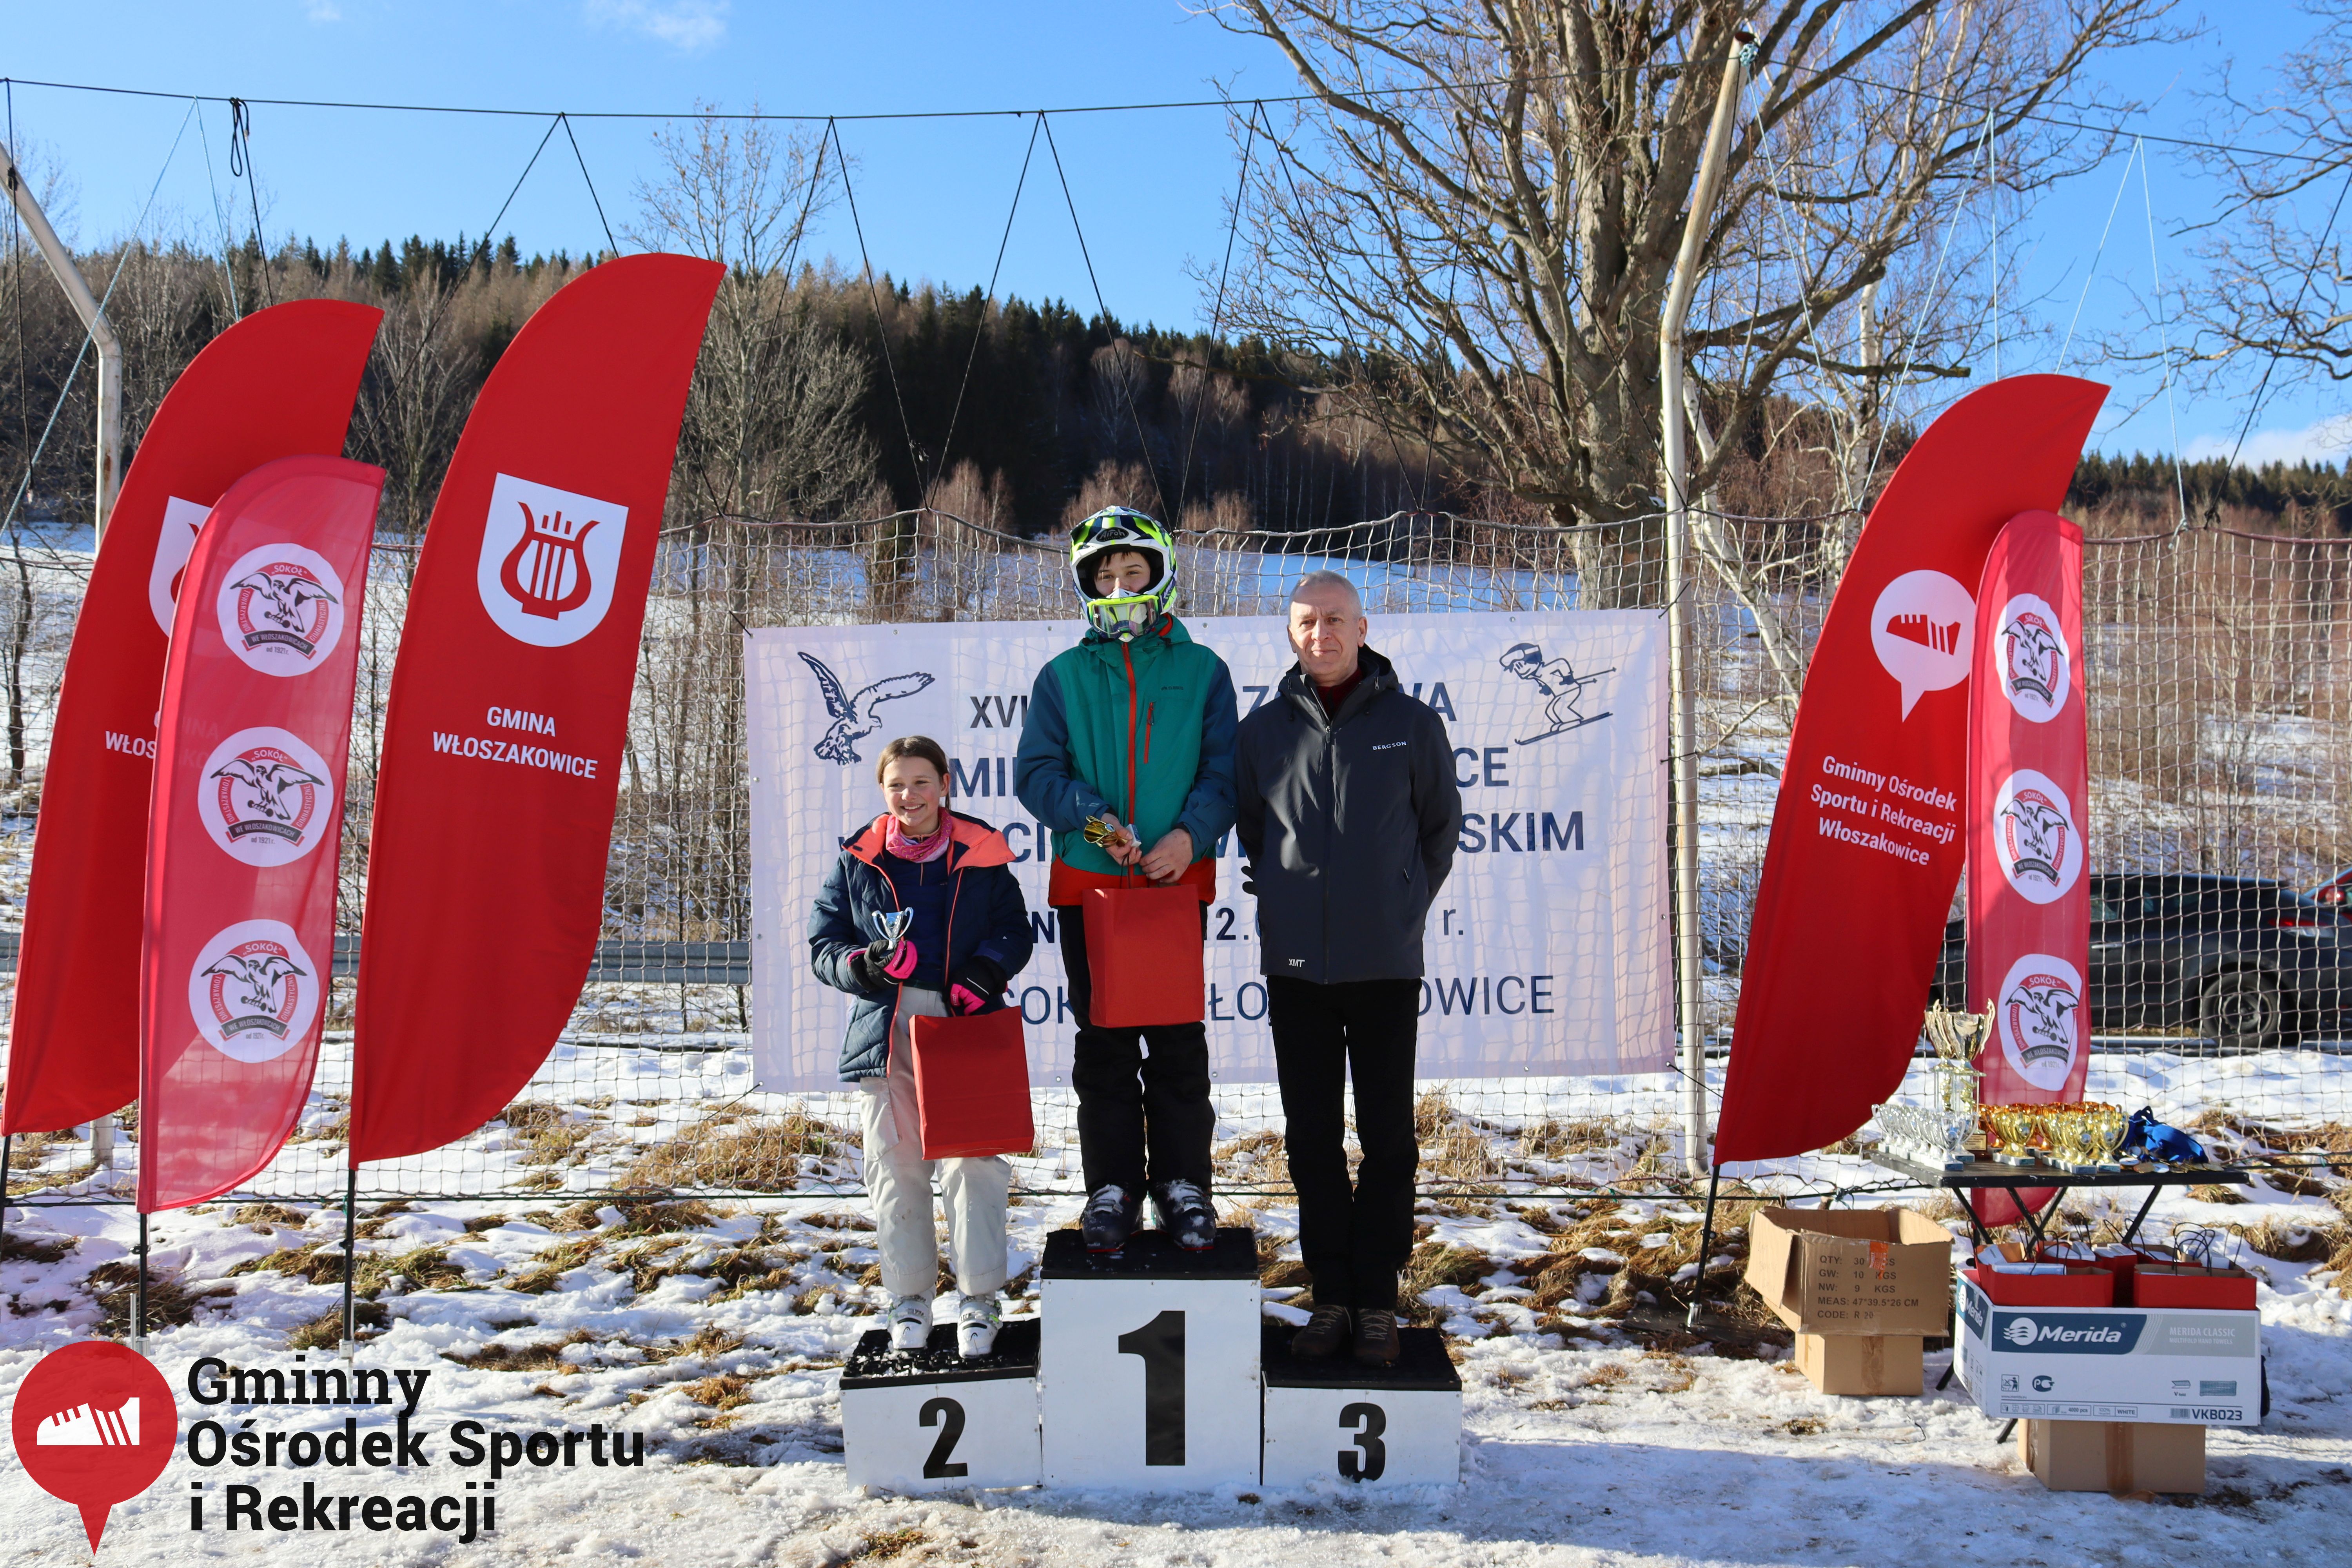 2022.02.12 - 18. Mistrzostwa Gminy Woszakowice w narciarstwie106.jpg - 3,00 MB